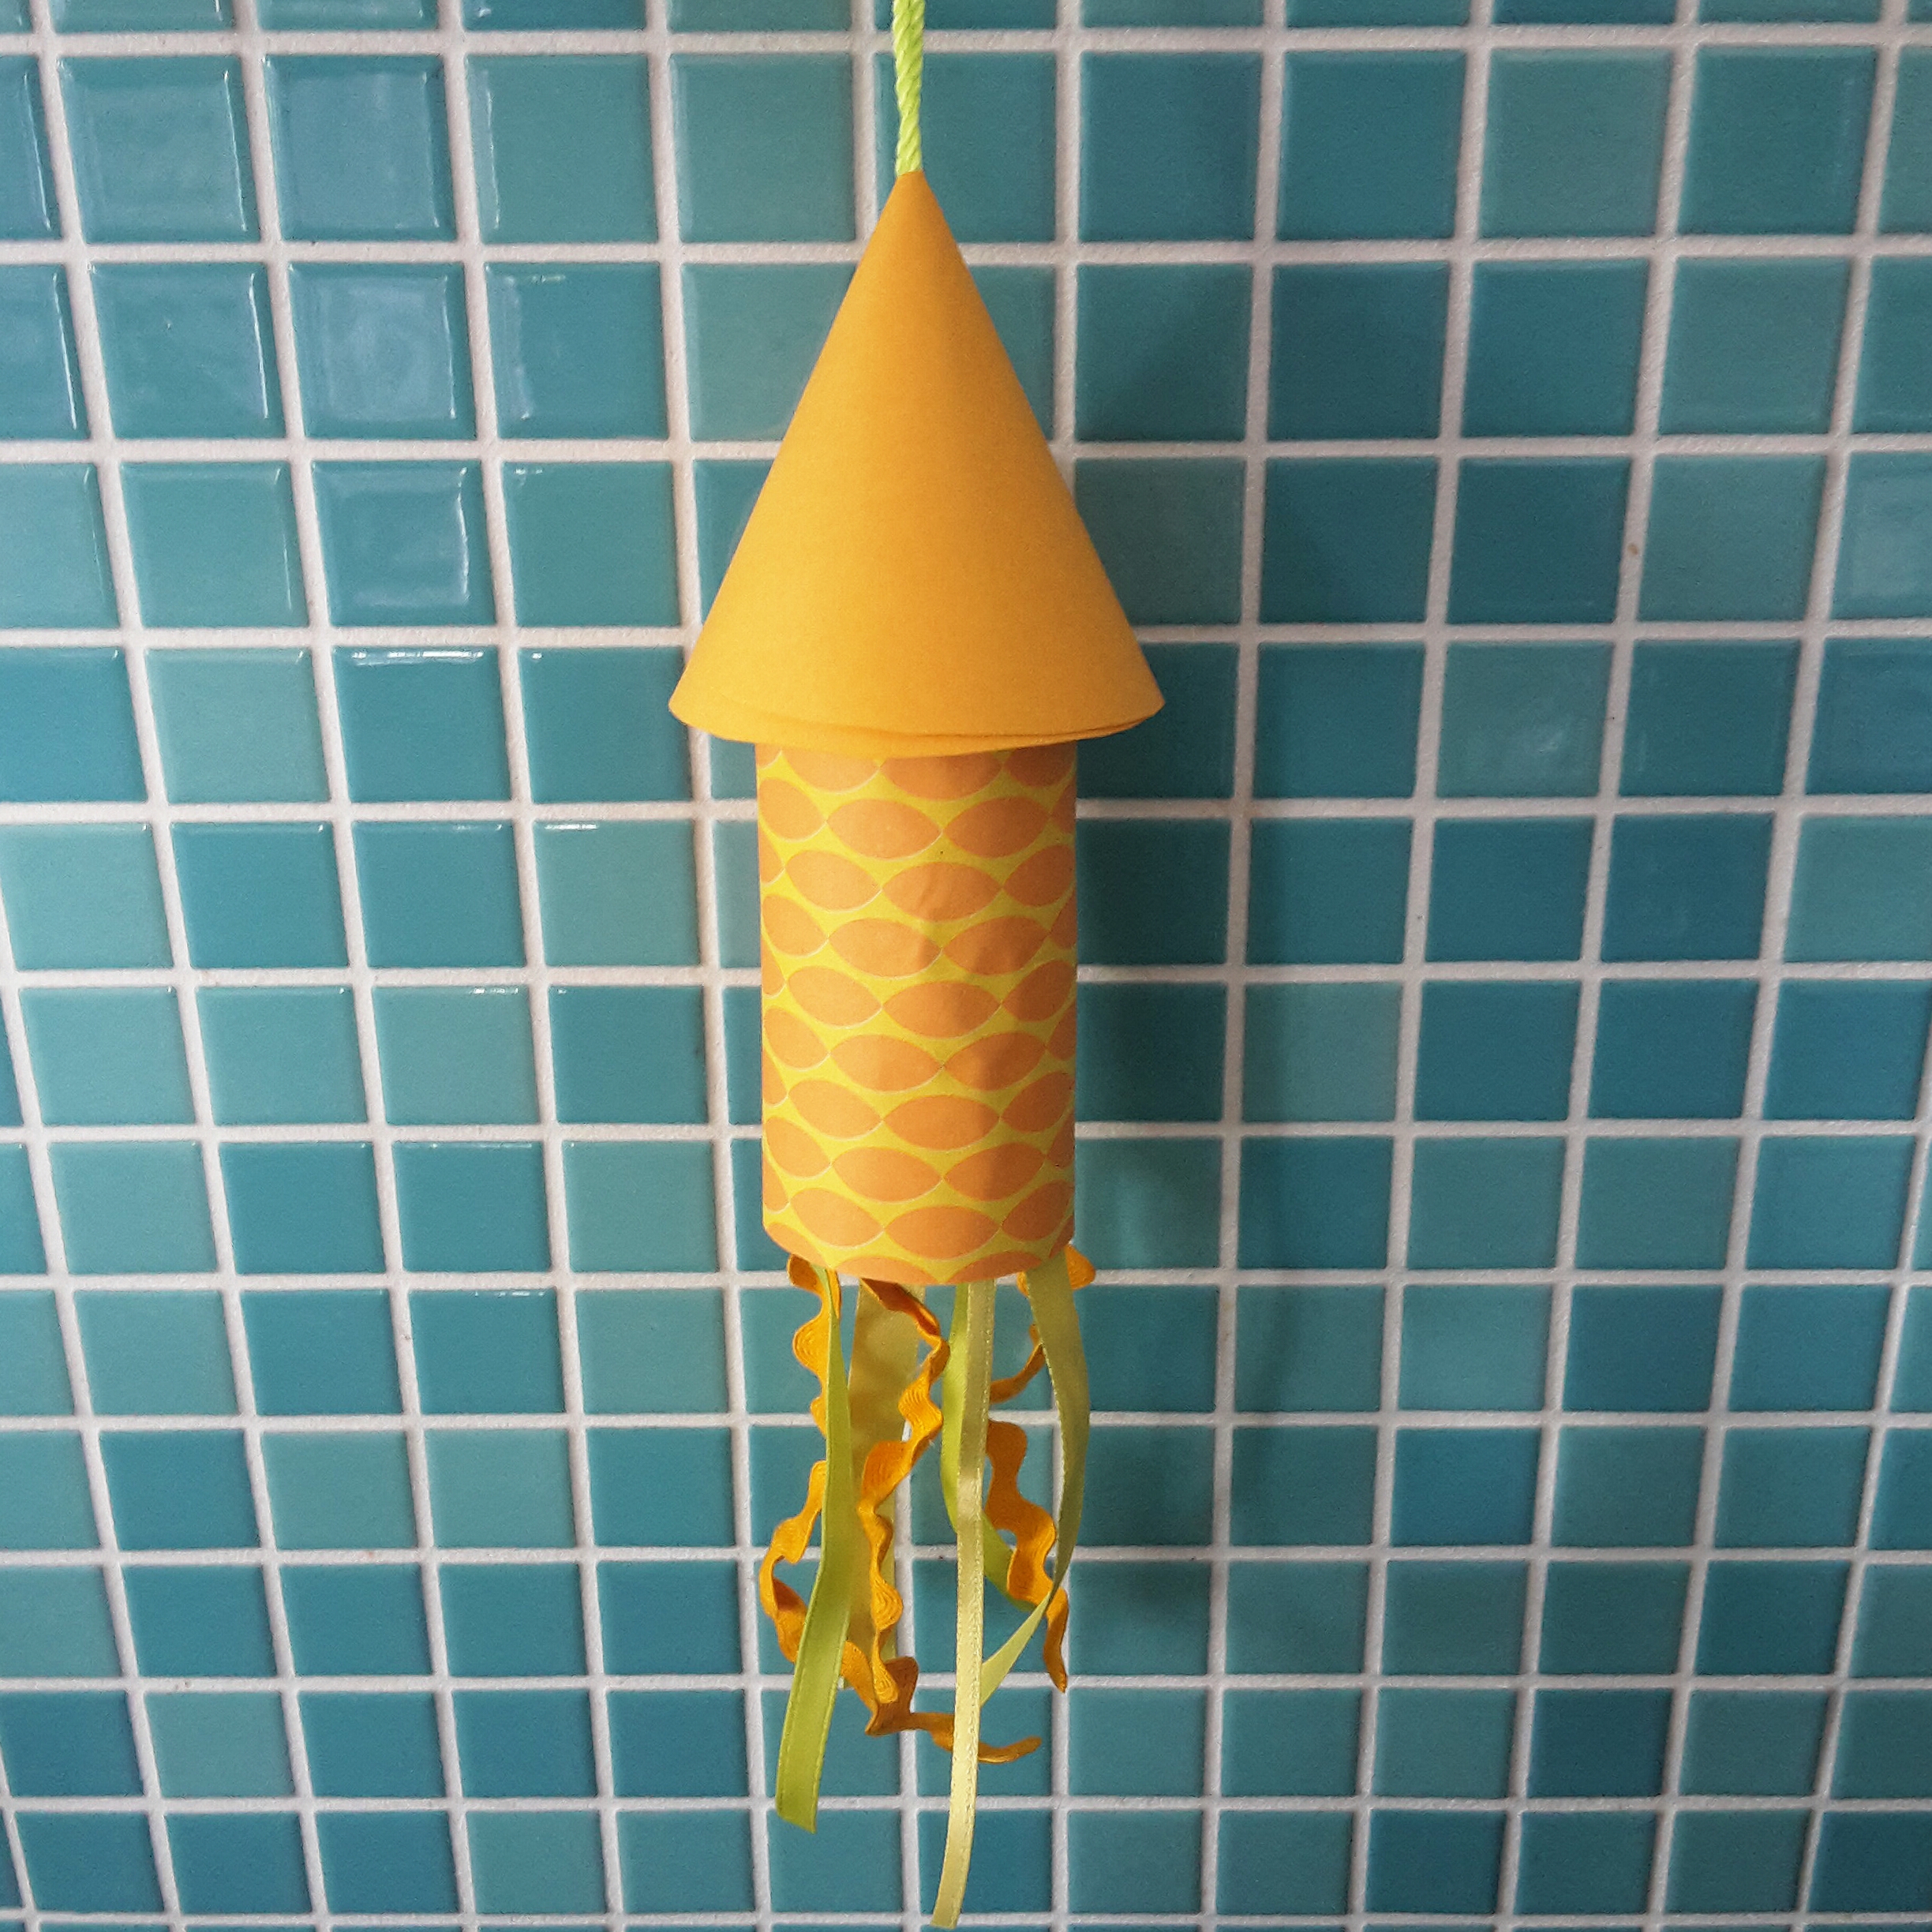 Ideeën om te knutselen met peuter en kleuter, zoals een raket van een wc rolletje